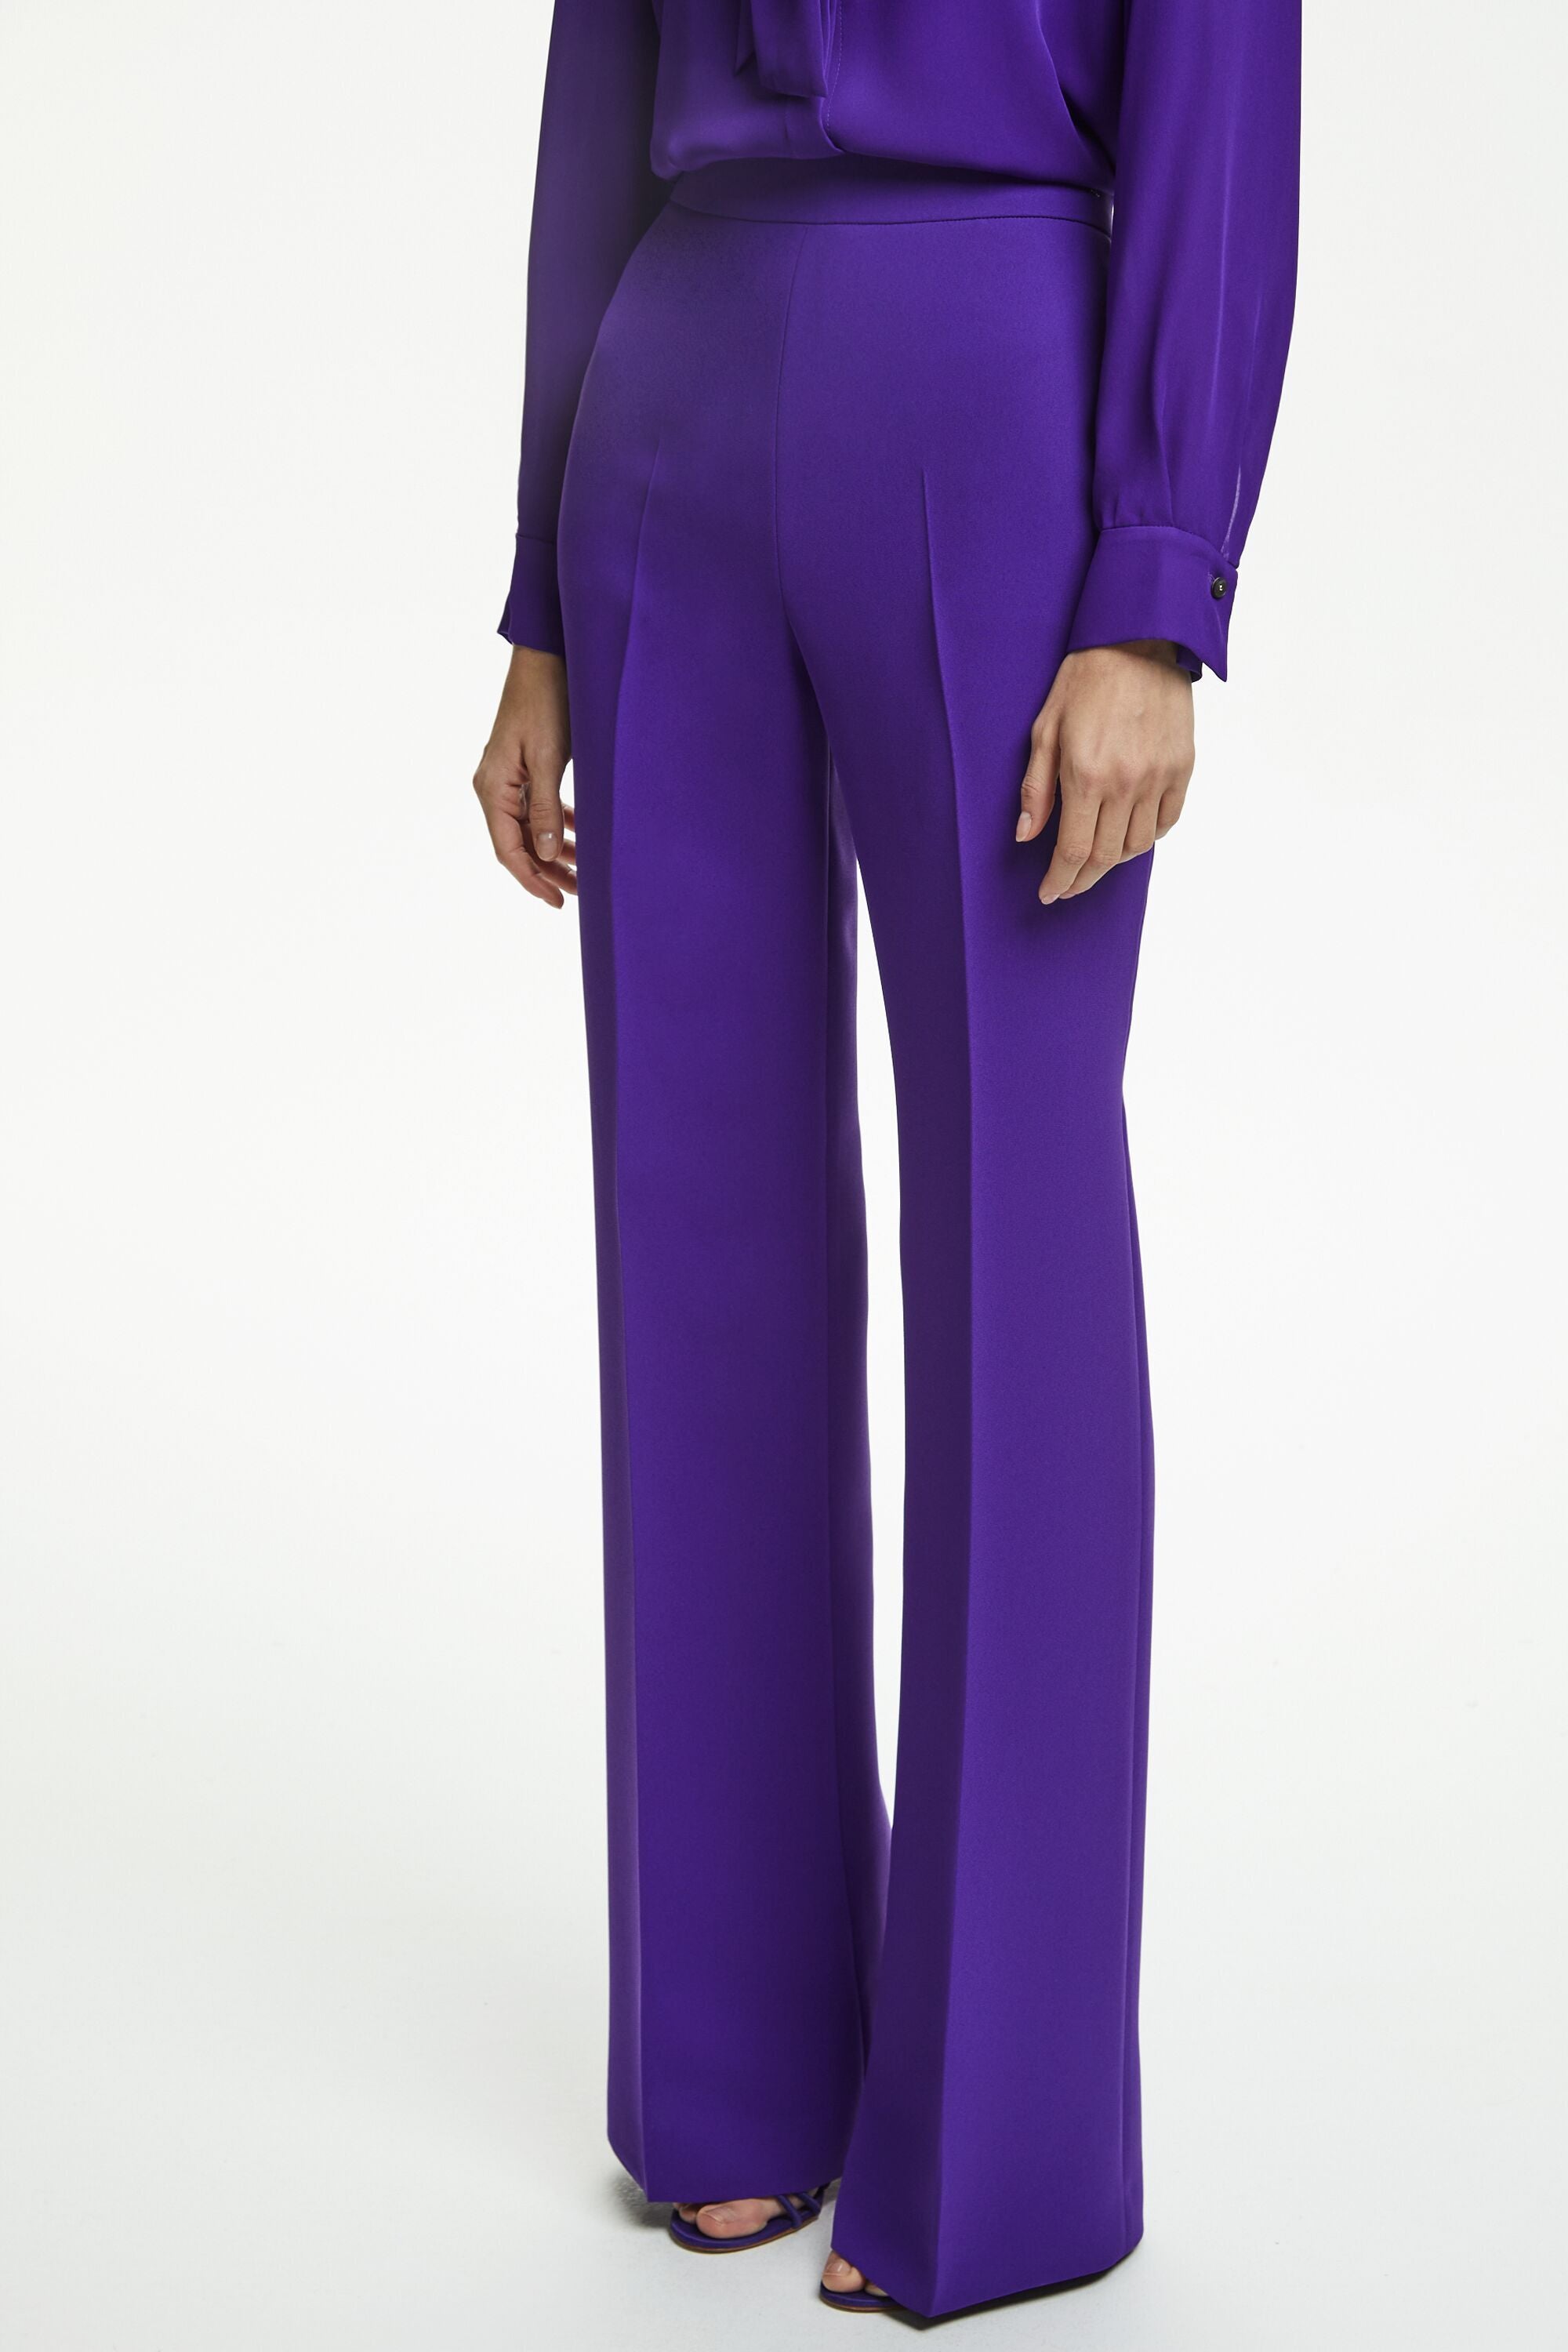 パンツbelper ベルパー grossy pleated pants purple